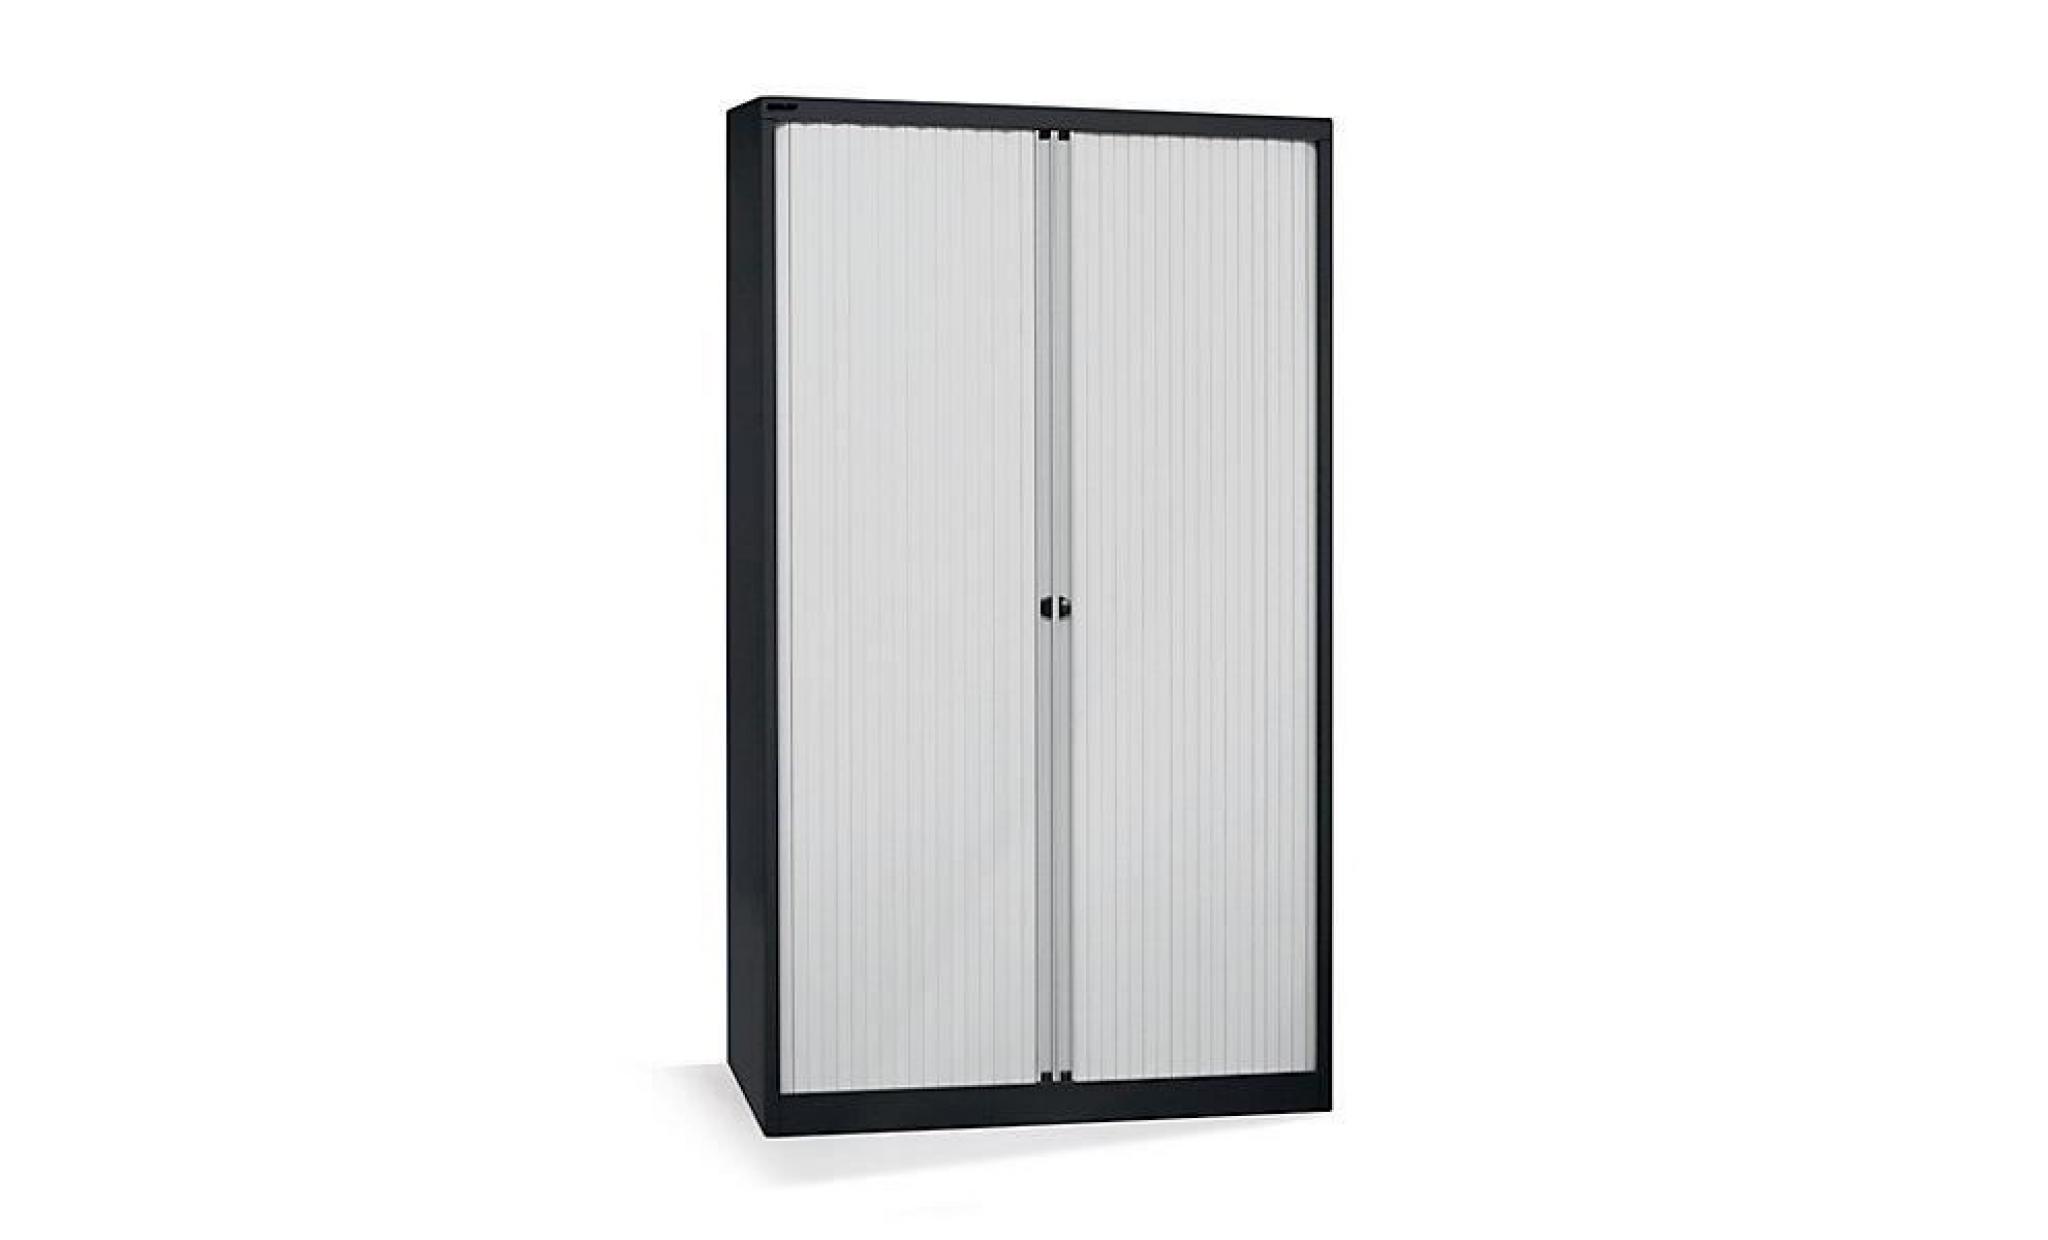 bisley armoire à rideaux   horizontal, noir profond / gris clair h x l 1980 x 800 mm, 4 tablettes   armoire basse armoire de bureau